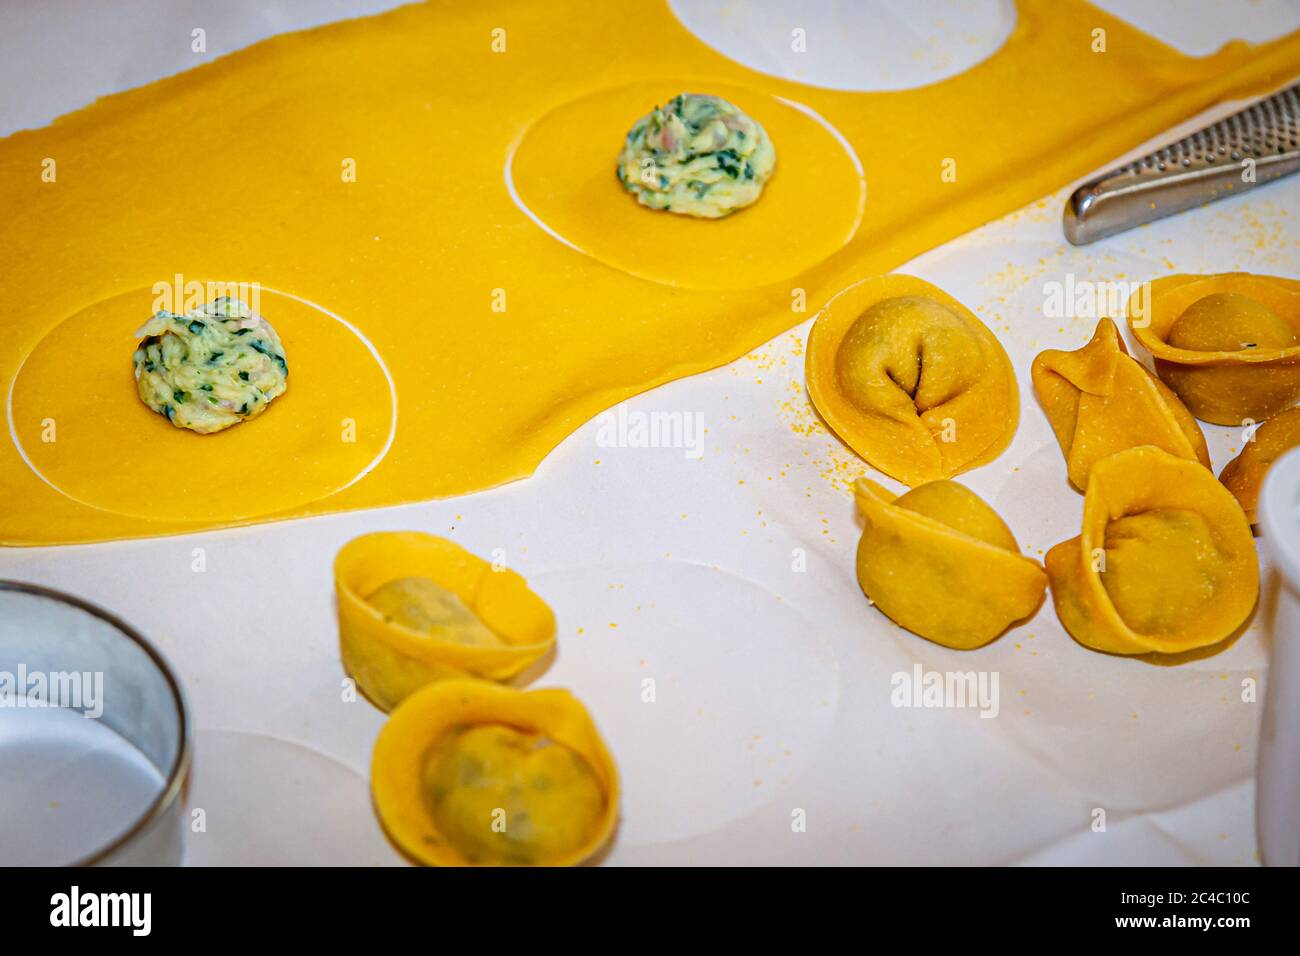 Tortellini by Giuseppe Sestito Stock Photo